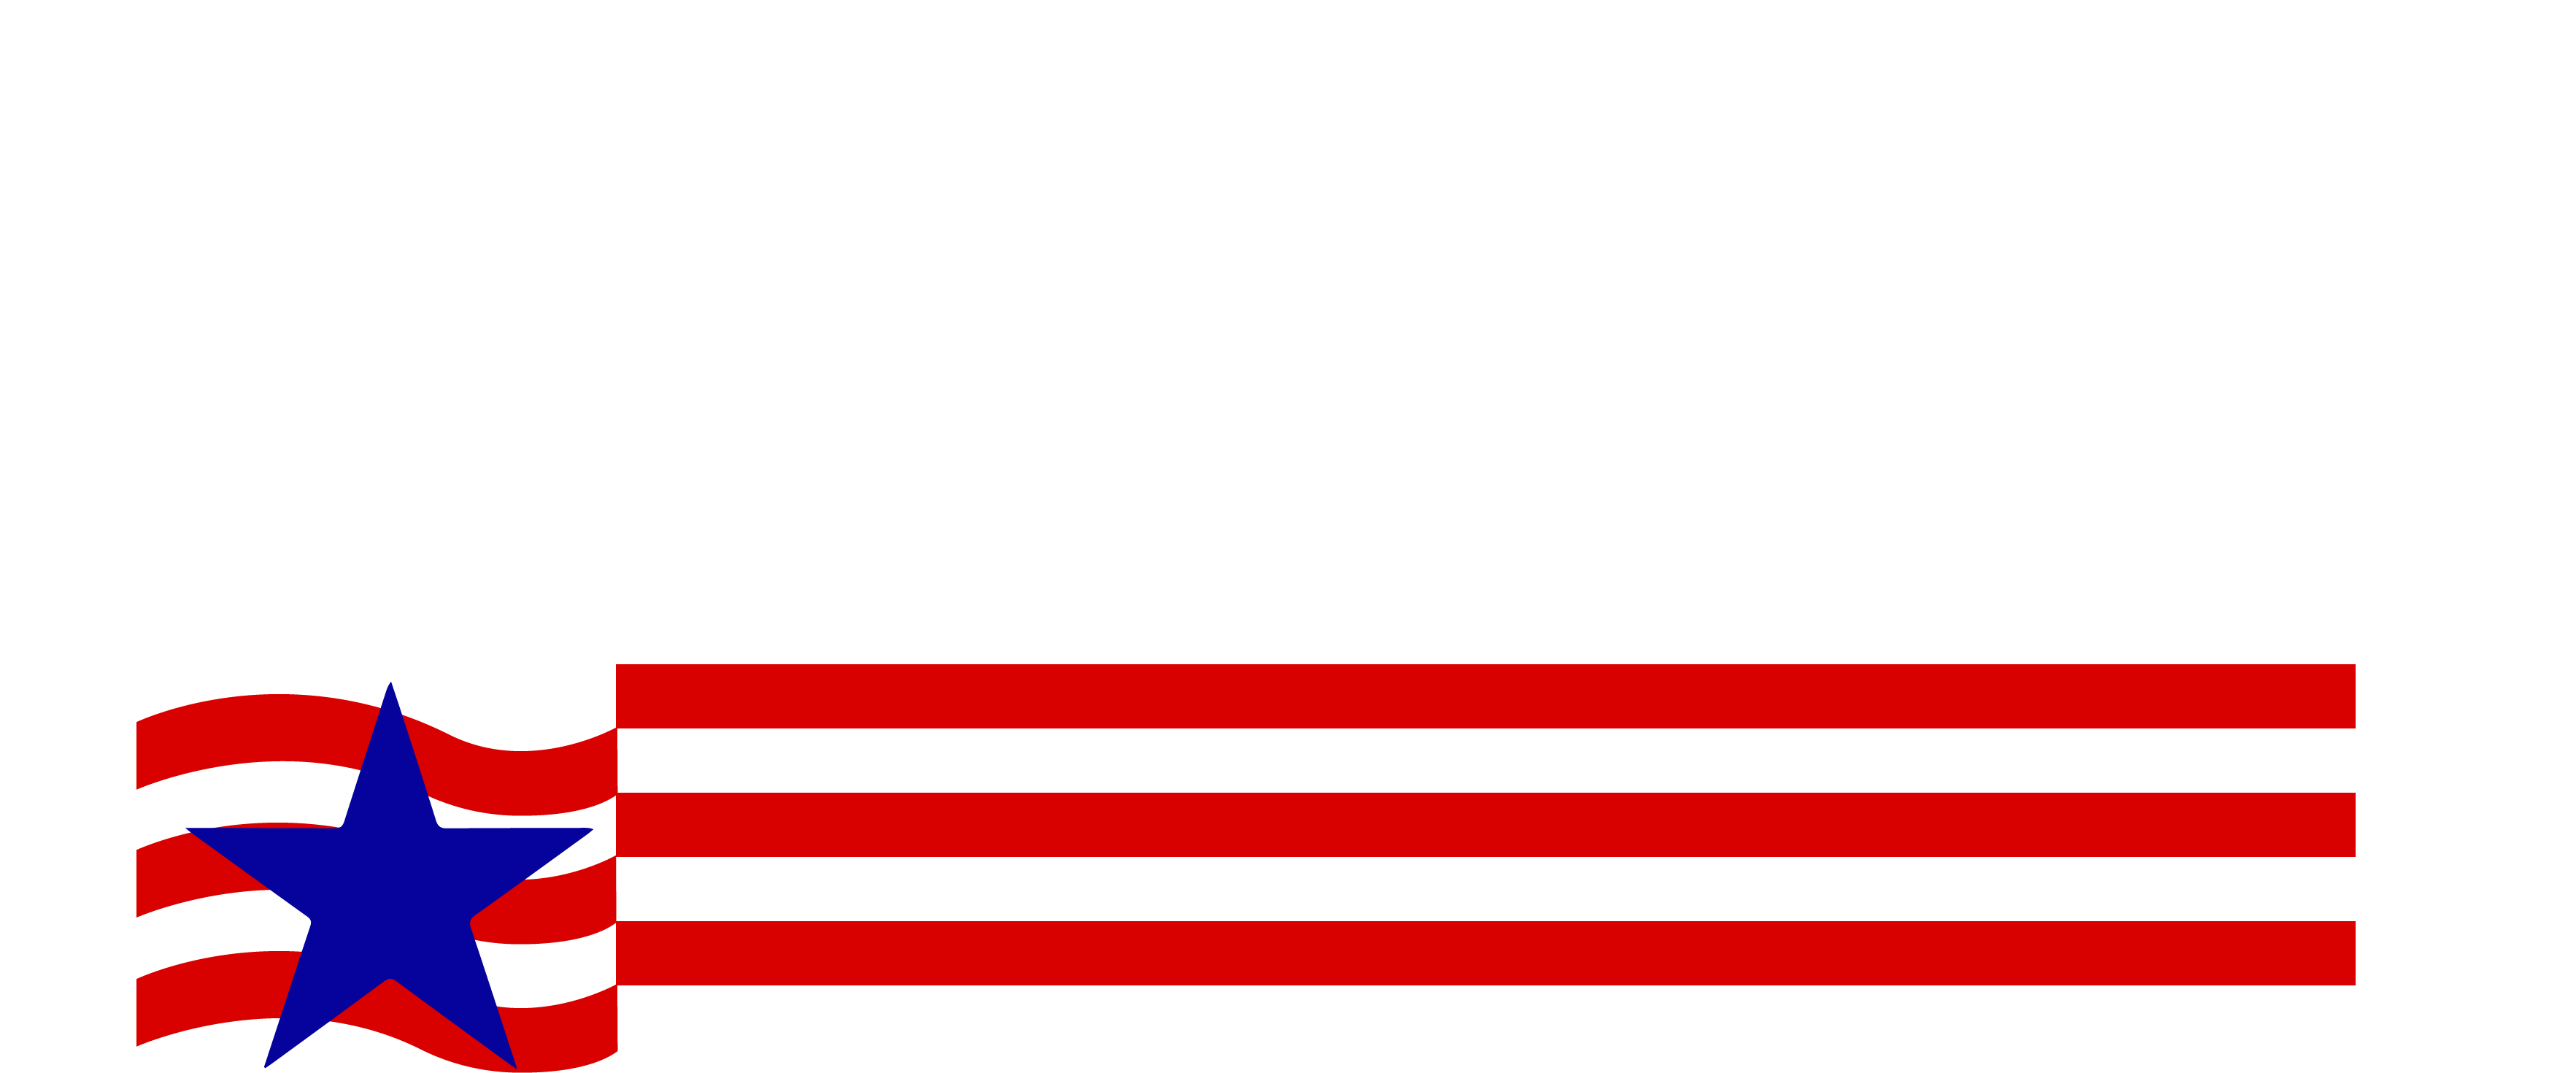 5 Fab Energy Inc.